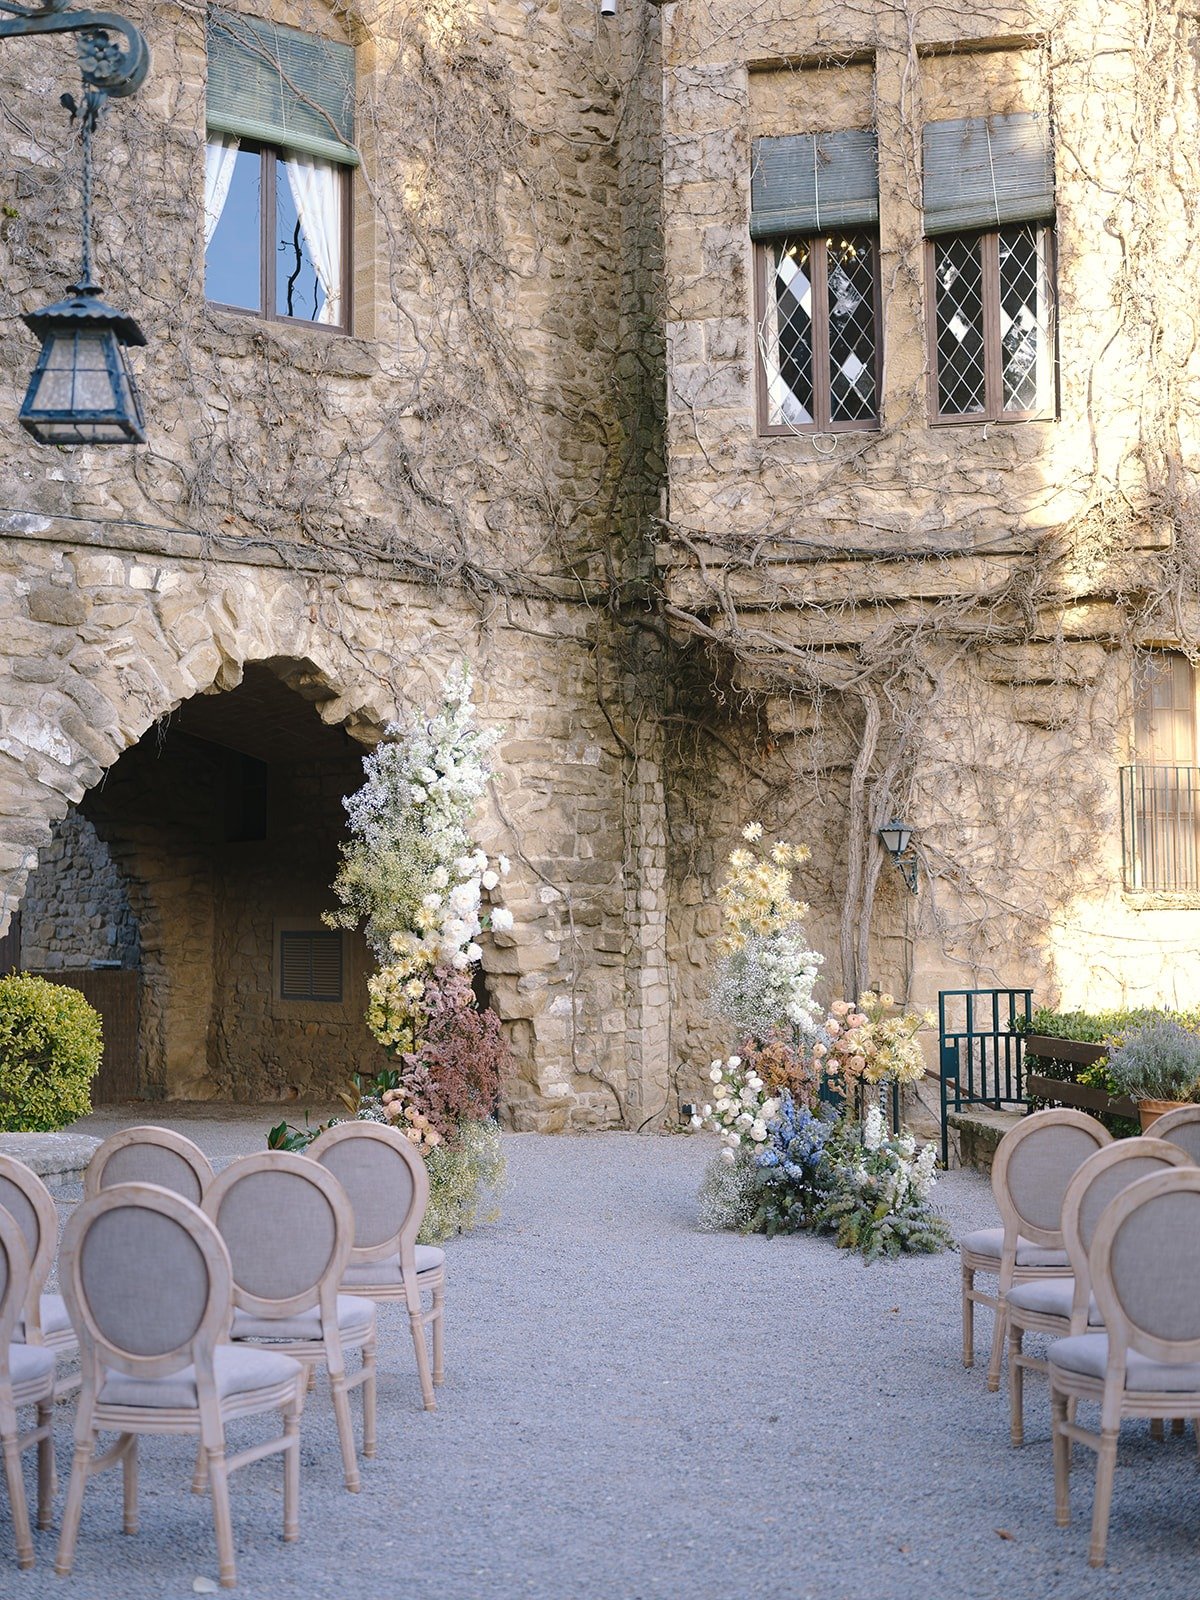 Romantic Spanish castle wedding ceremony